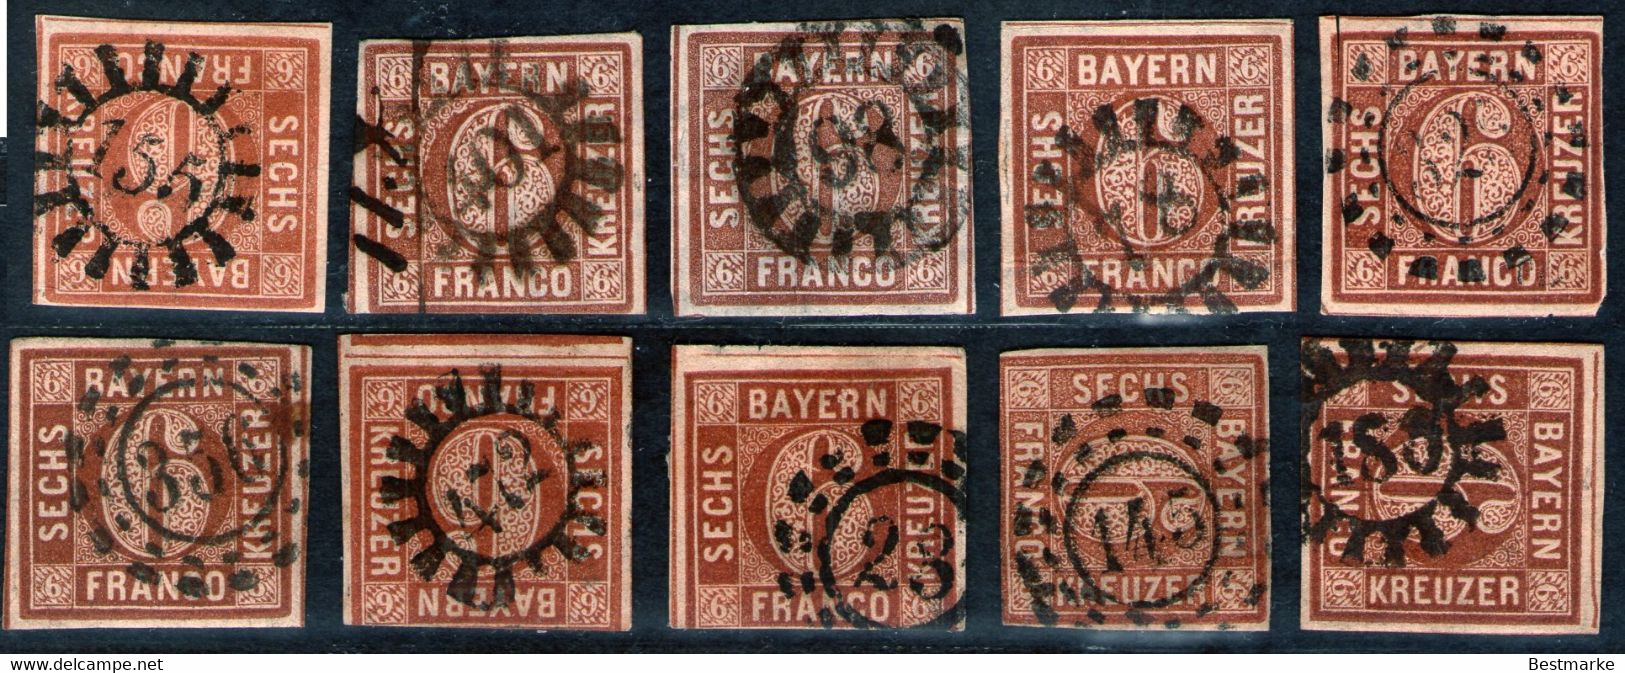 Bayern Lot 2461 - 10 Mal Nr. 4 - Stempel GMR Und OMR, Farben, Papiersorten, Breitrandige Stücke - Sammlungen